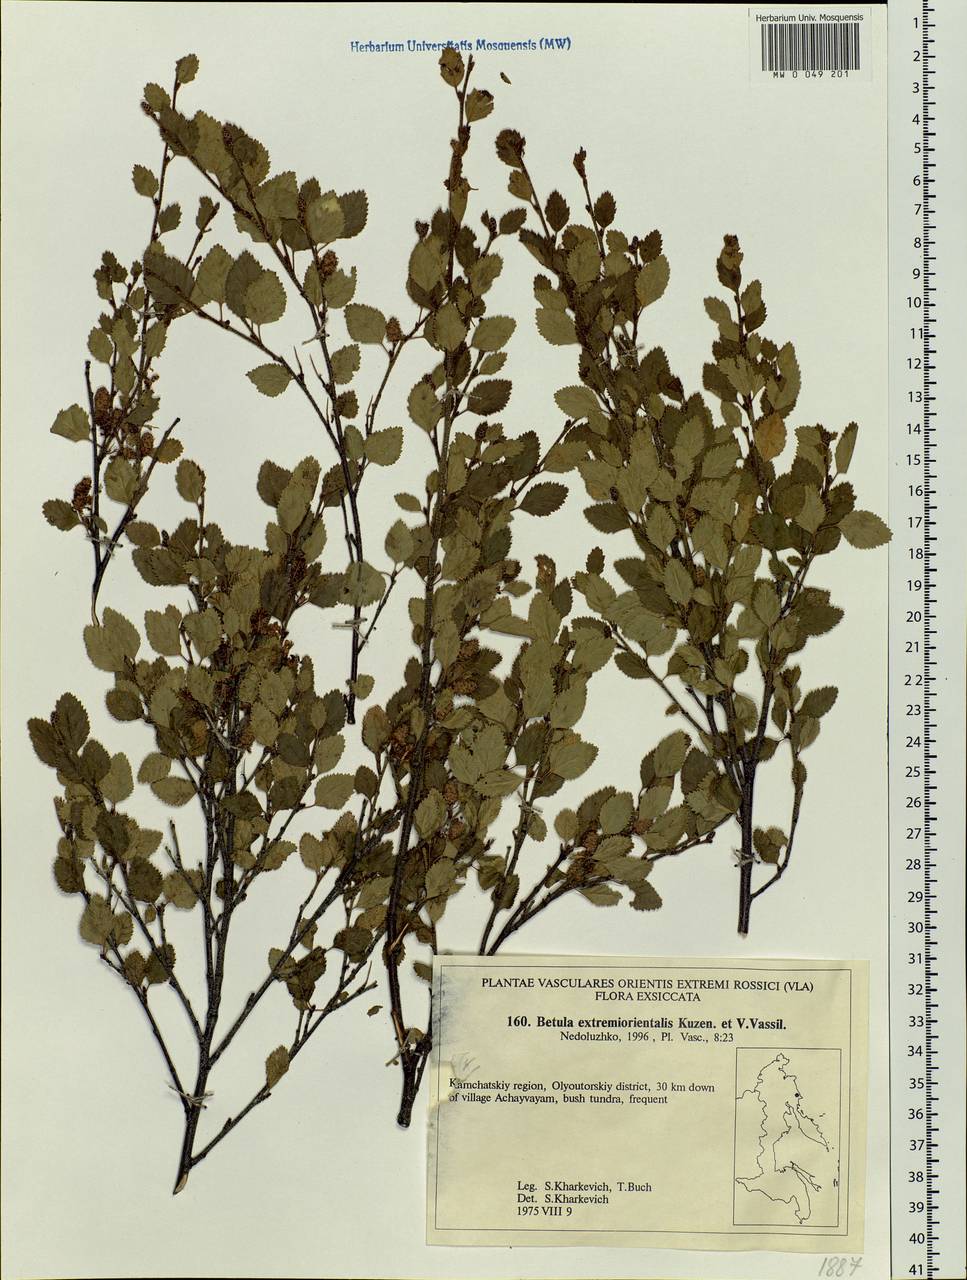 Betula humilis Schrank, Siberia, Chukotka & Kamchatka (S7) (Russia)